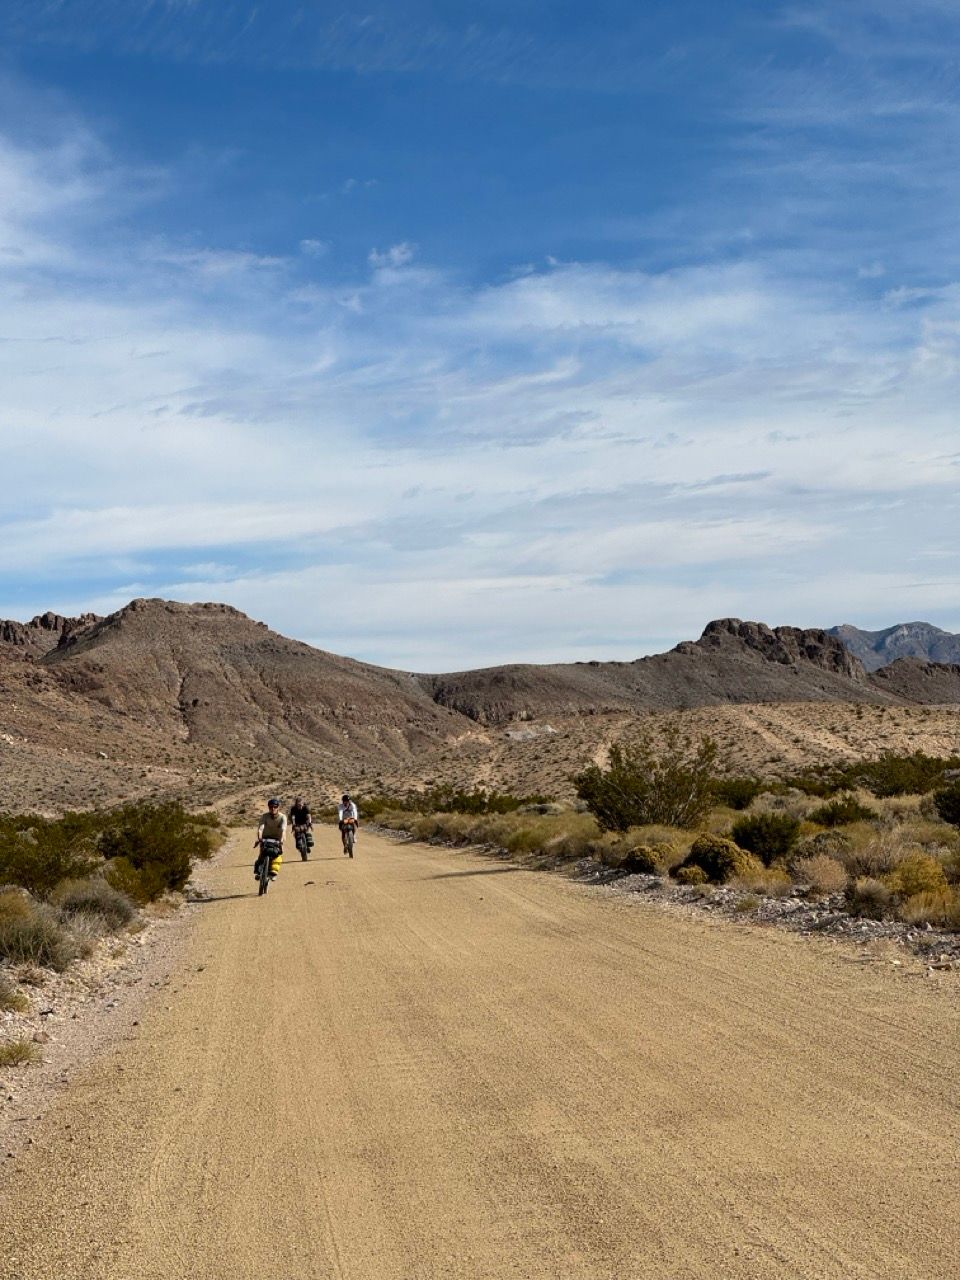 Bikepacking Death Valley in 3 days